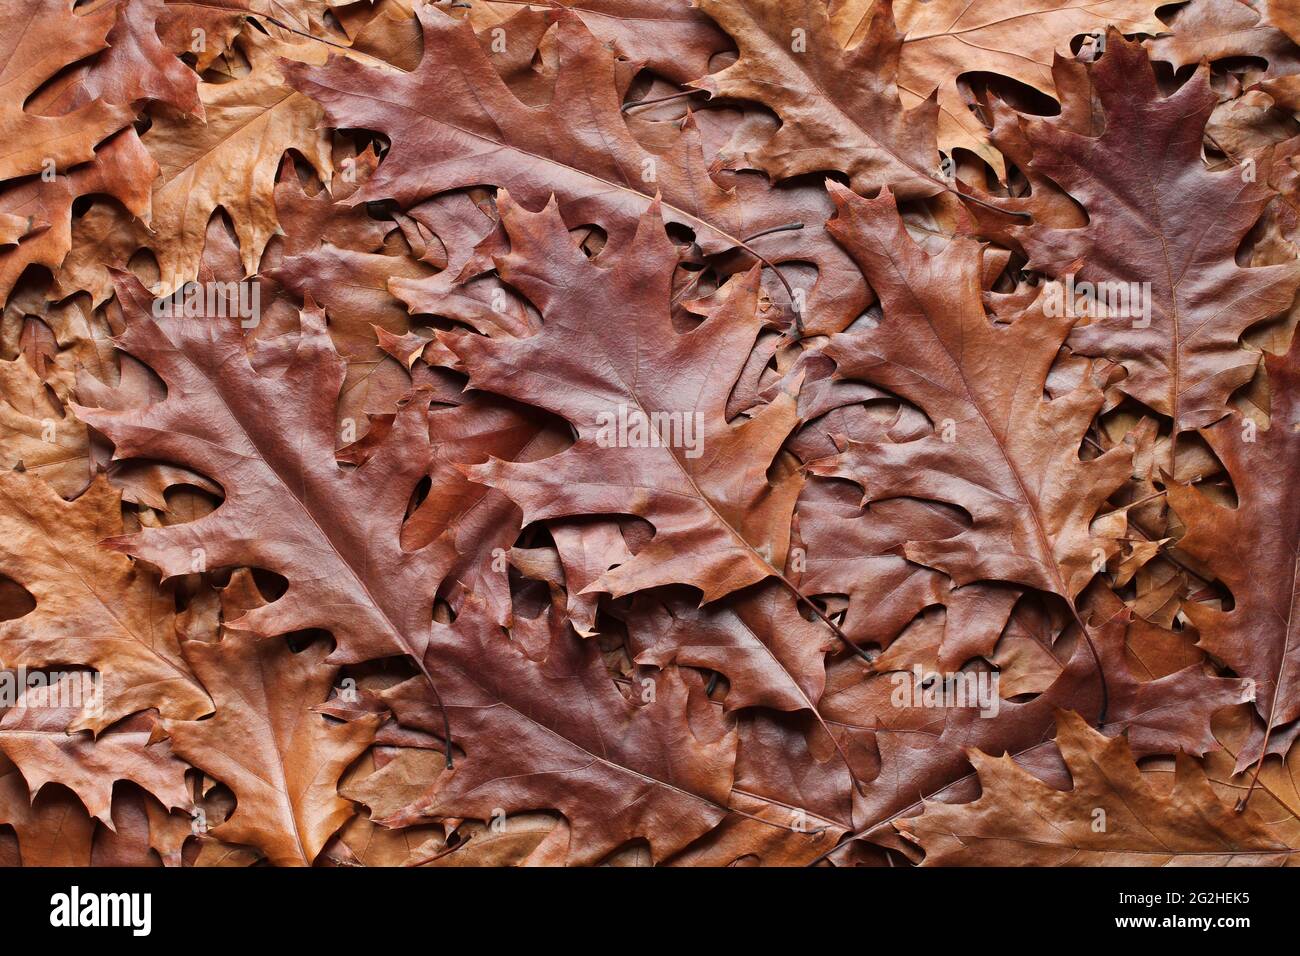 Arrière-plan de l'automne - vue de dessus d'un tas de feuilles de chêne brun et jaune sec. Gros plan Banque D'Images